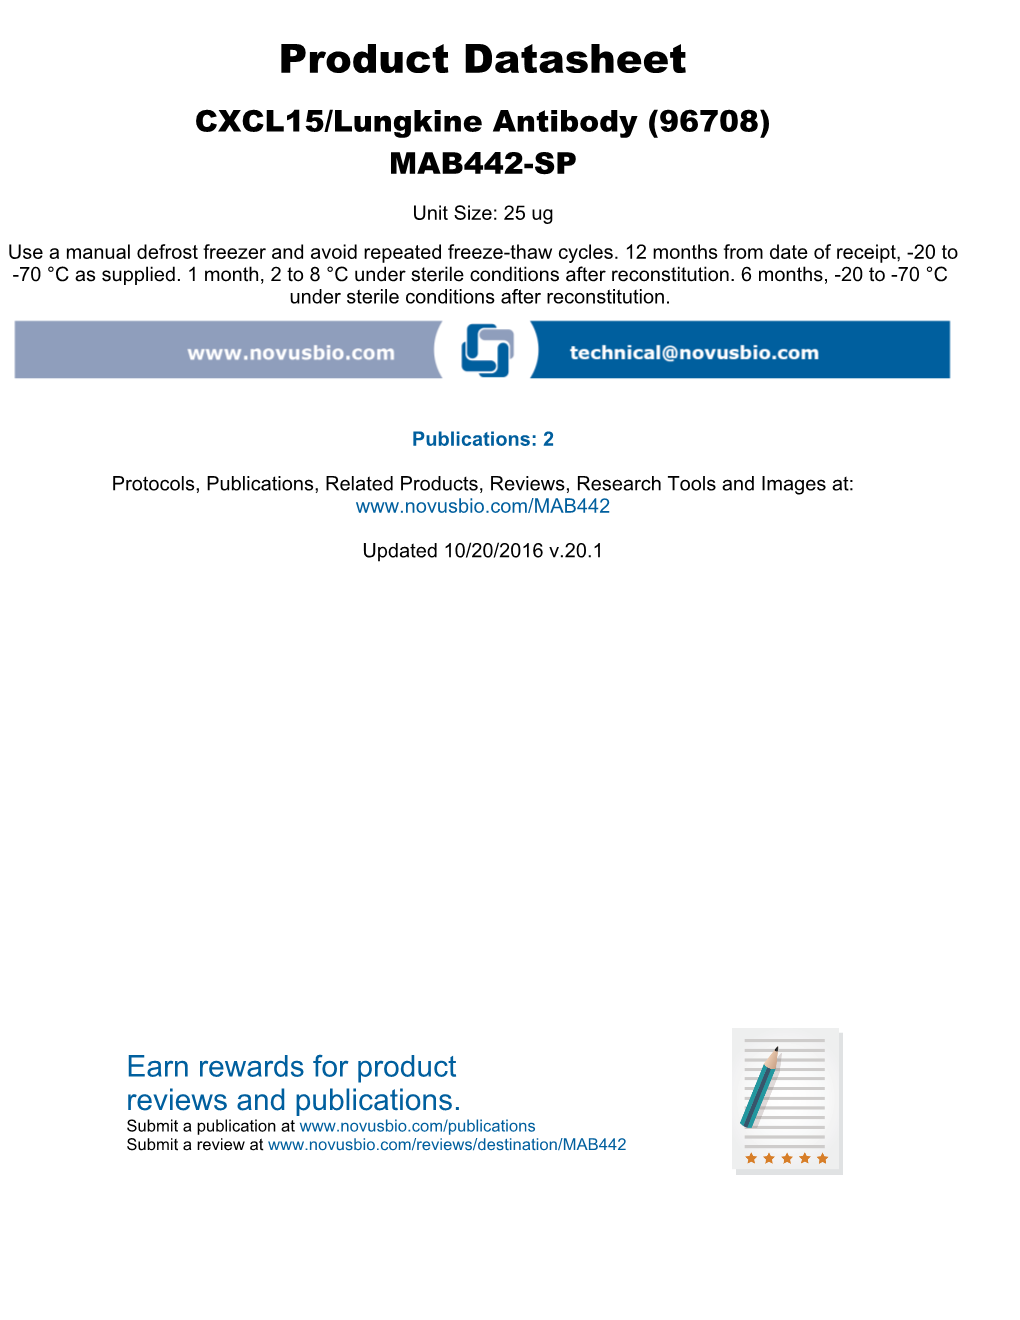 Product Datasheet CXCL15/Lungkine Antibody